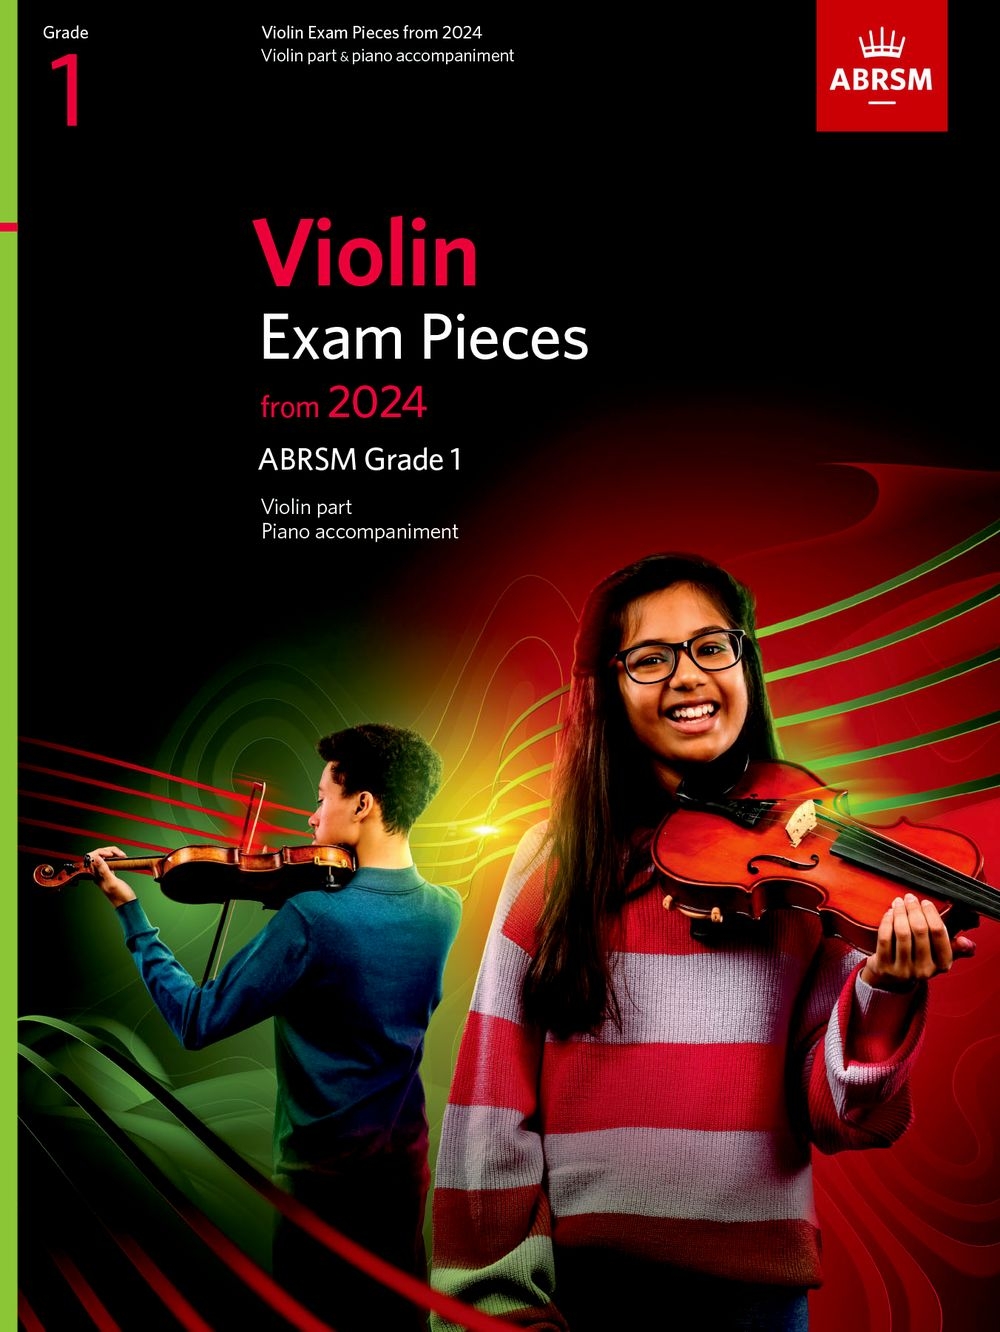 Violin Exam Pieces from 2024, ABRSM Grade 1